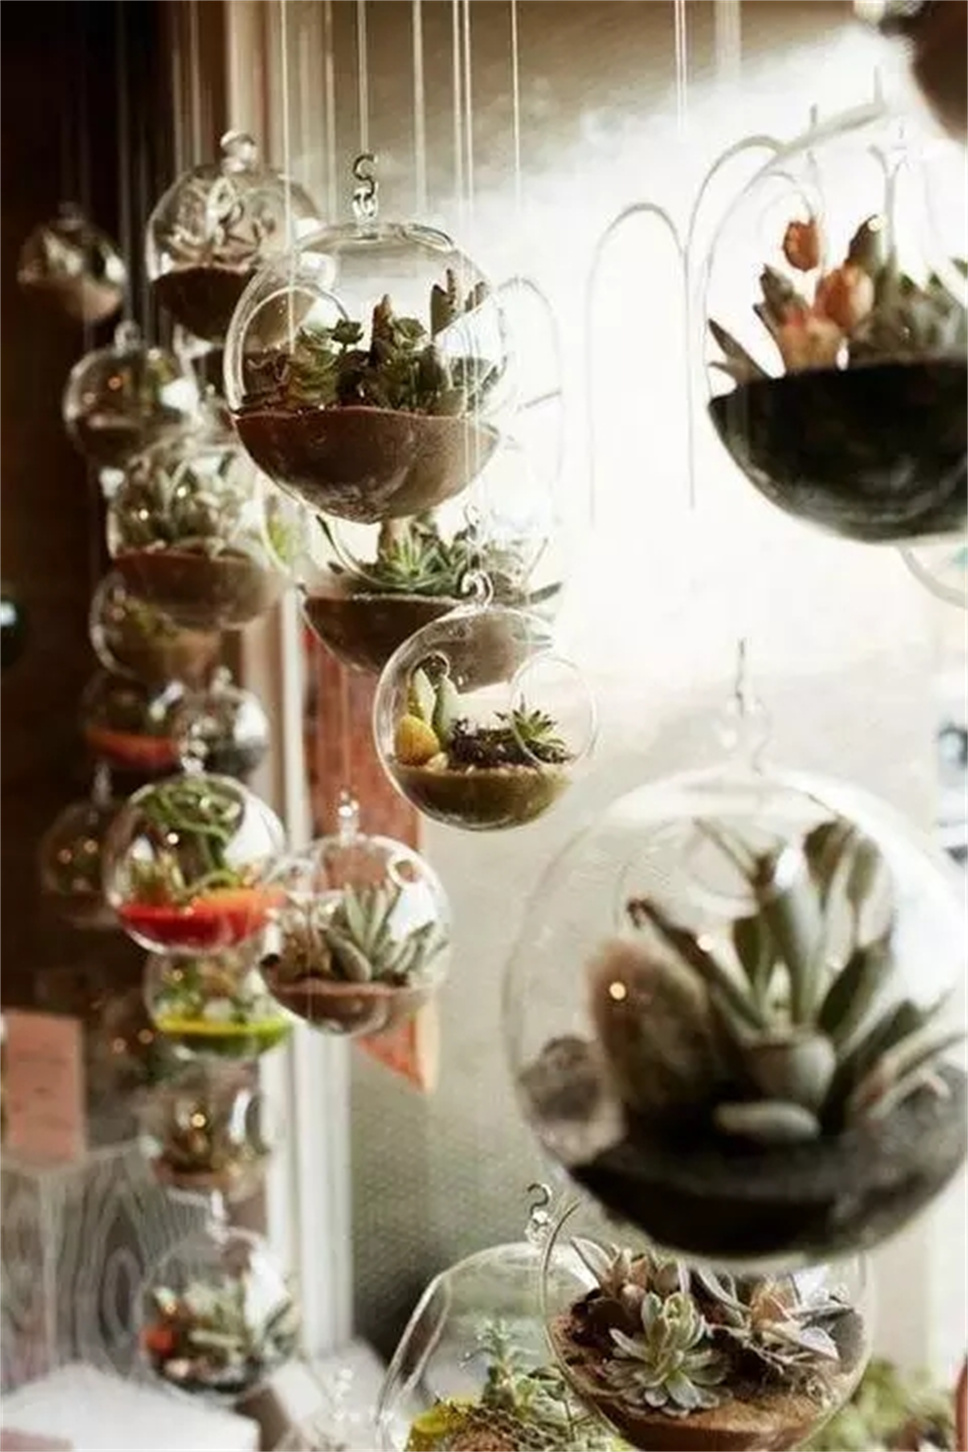 把植物种在这样的花盆里，你有考虑过植物的感受吗？